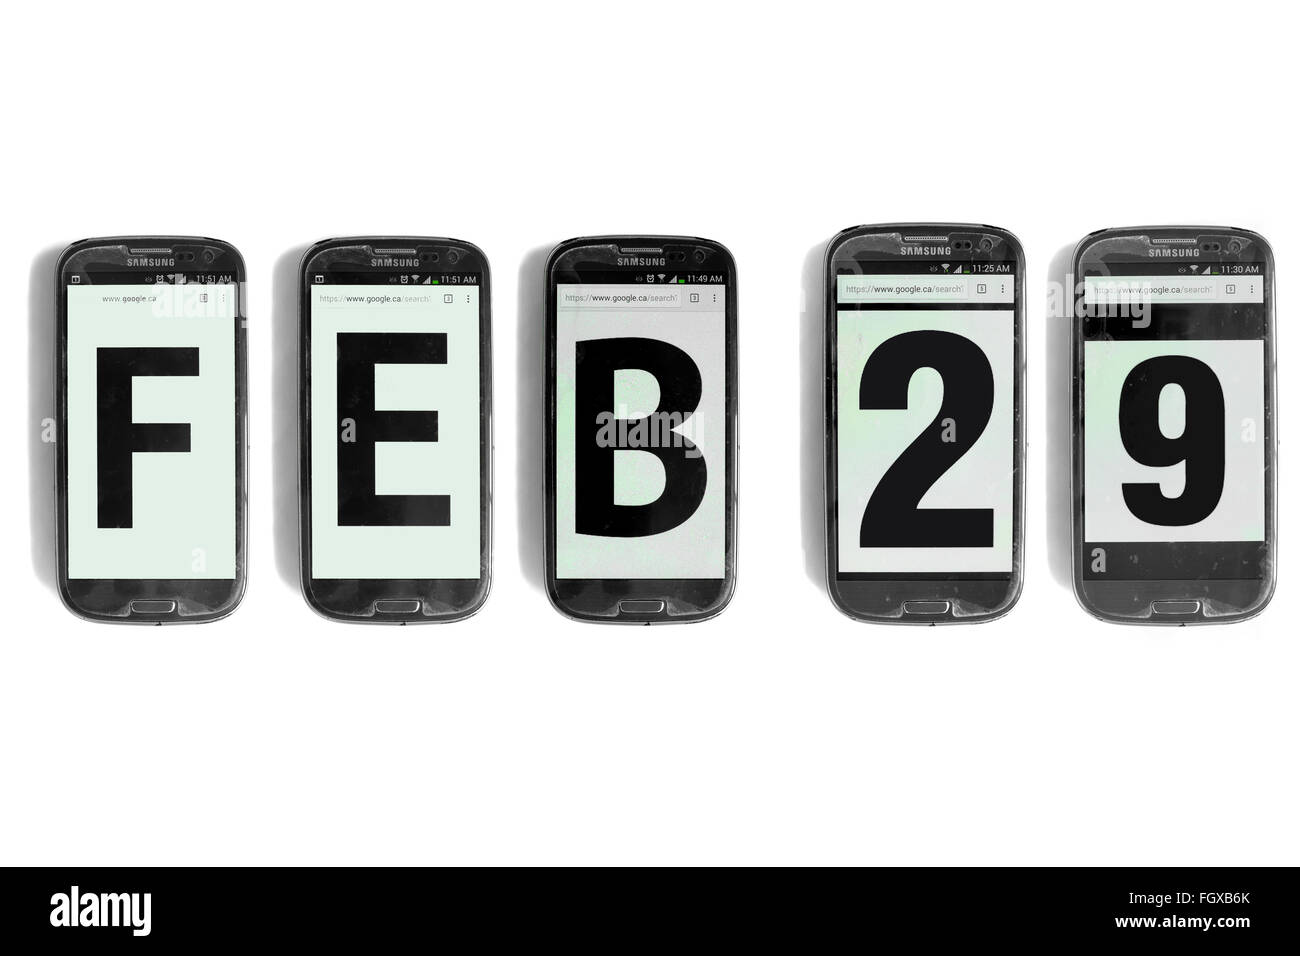 Feb 29 scritto su schermi di smartphone fotografati contro uno sfondo bianco. Foto Stock